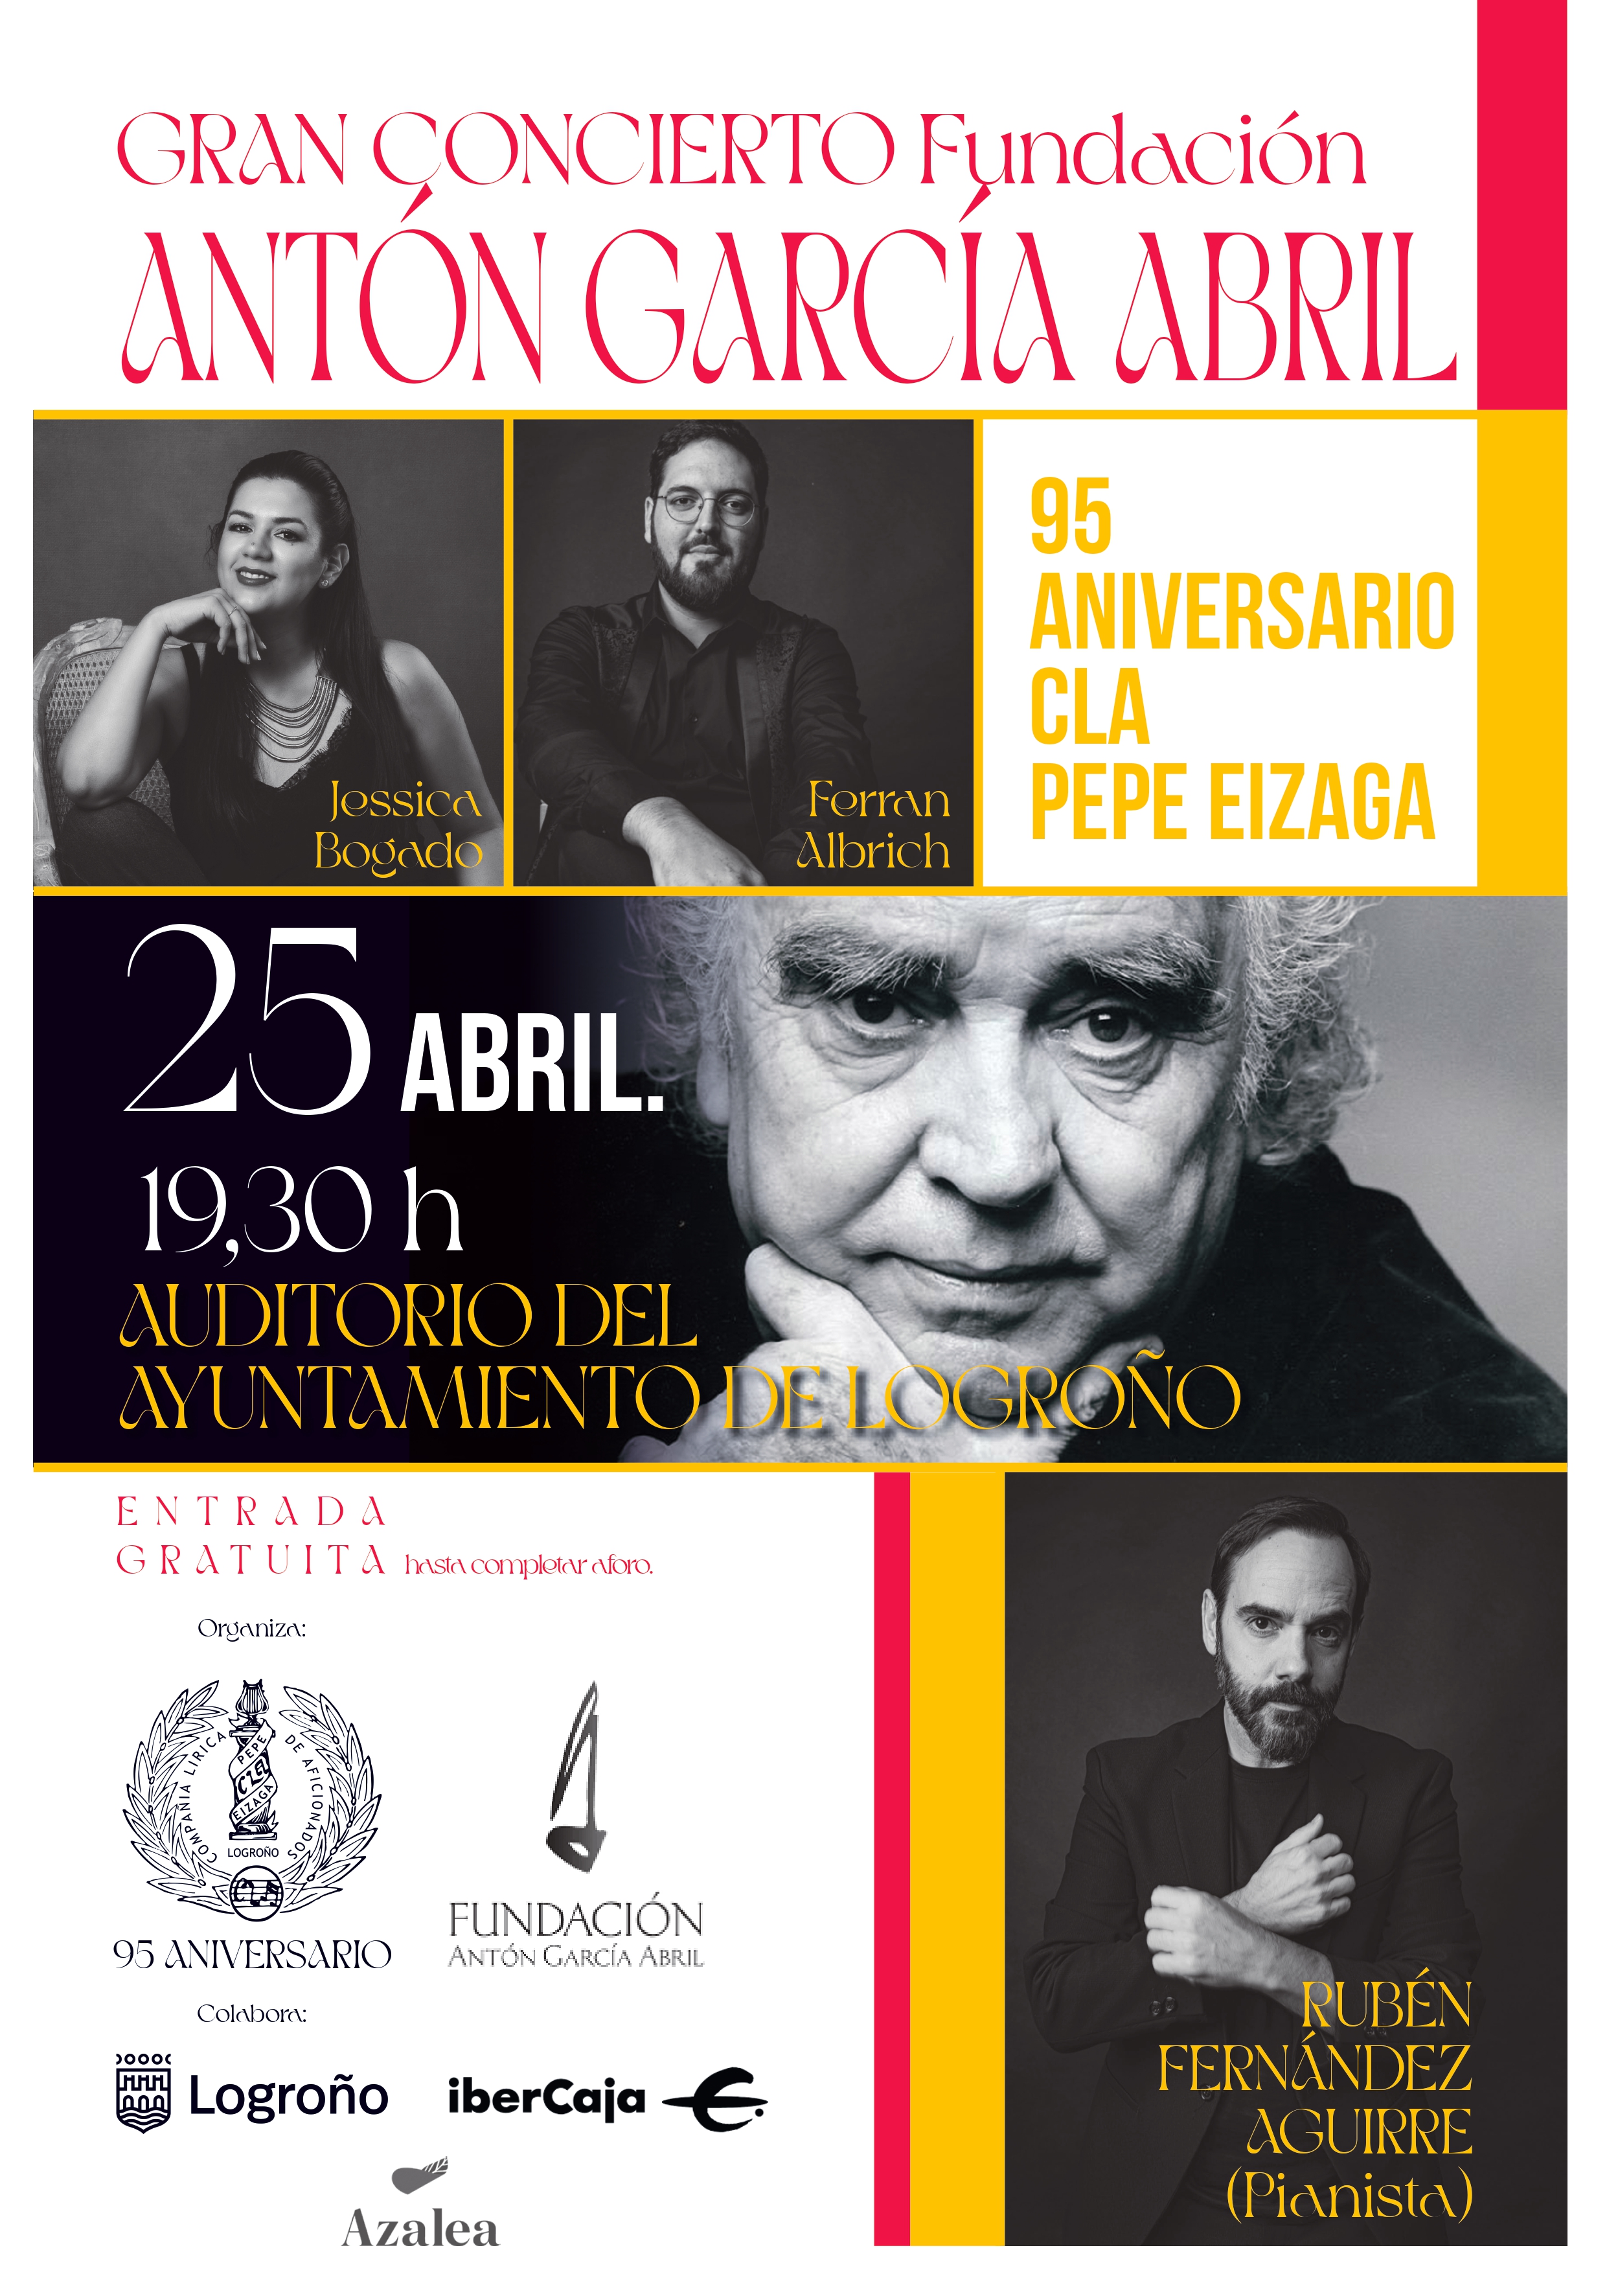 Imagen El Auditorio de Ayuntamiento acoge mañana el ‘Gran concierto Fundación Antón García Abril’ con motivo del 95 aniversario de la CLA Pepe Eizaga